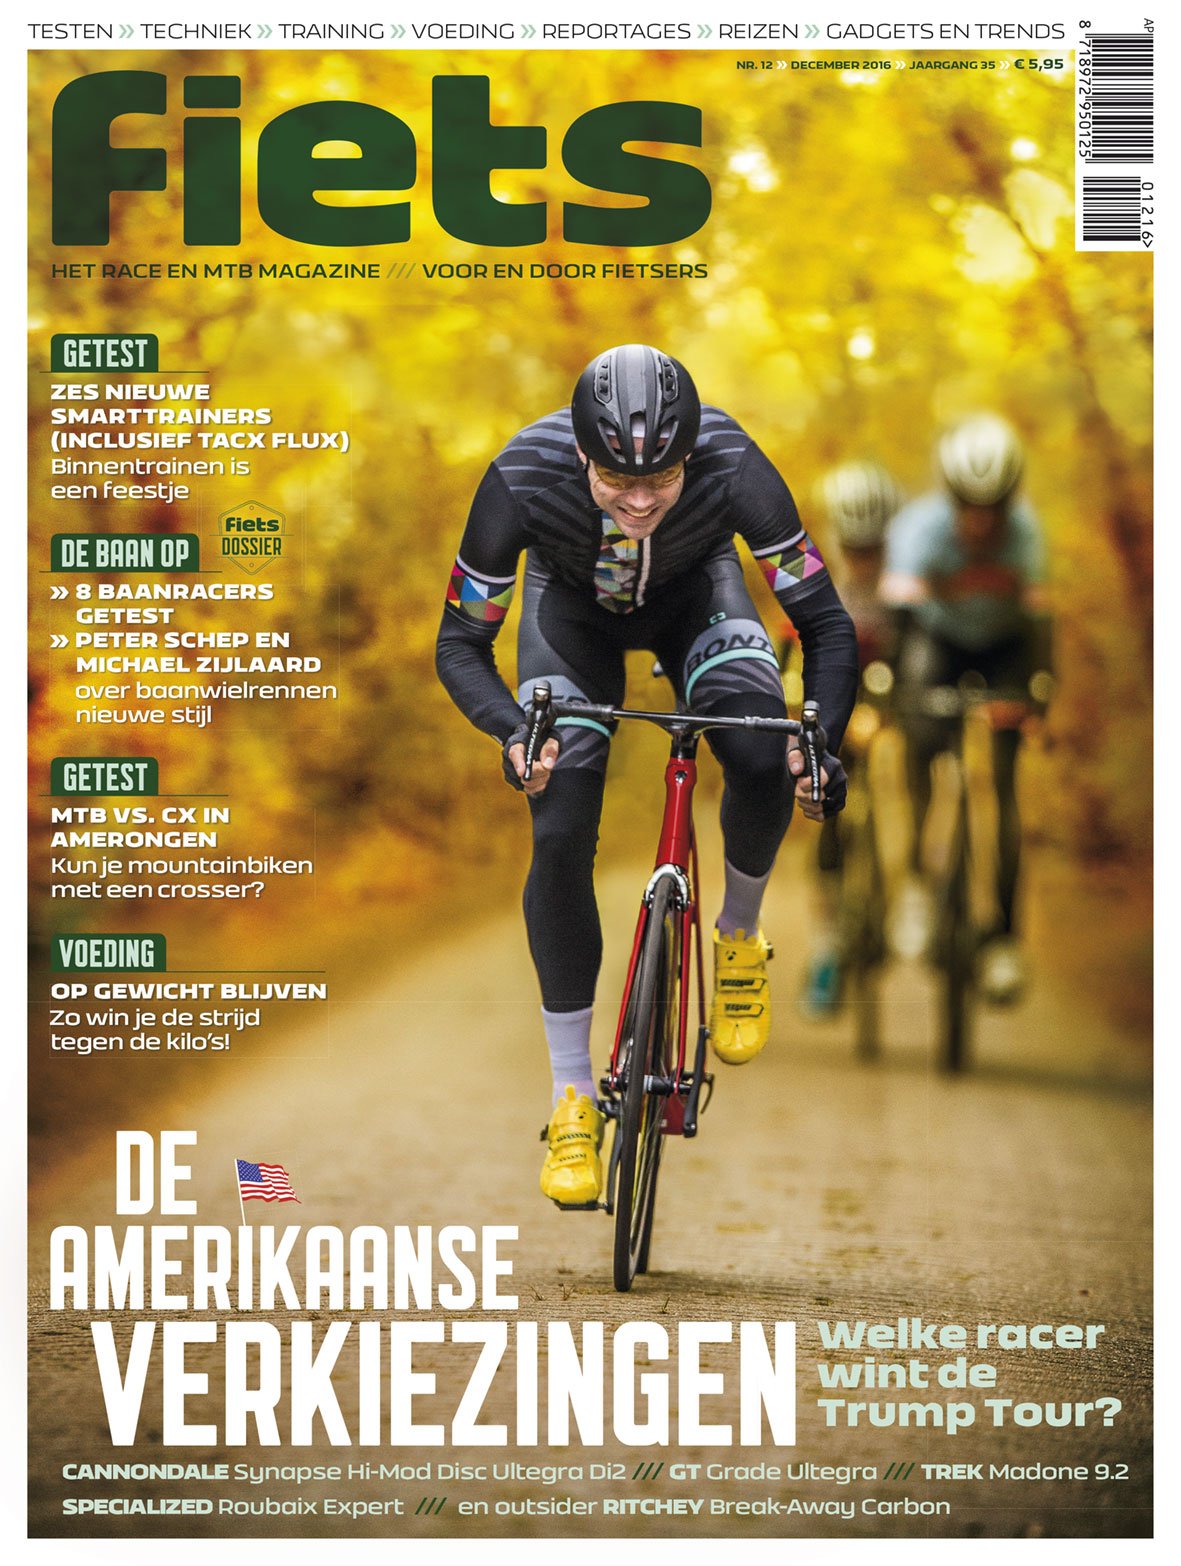 Afbeeldingsresultaat voor fiets magazine covers